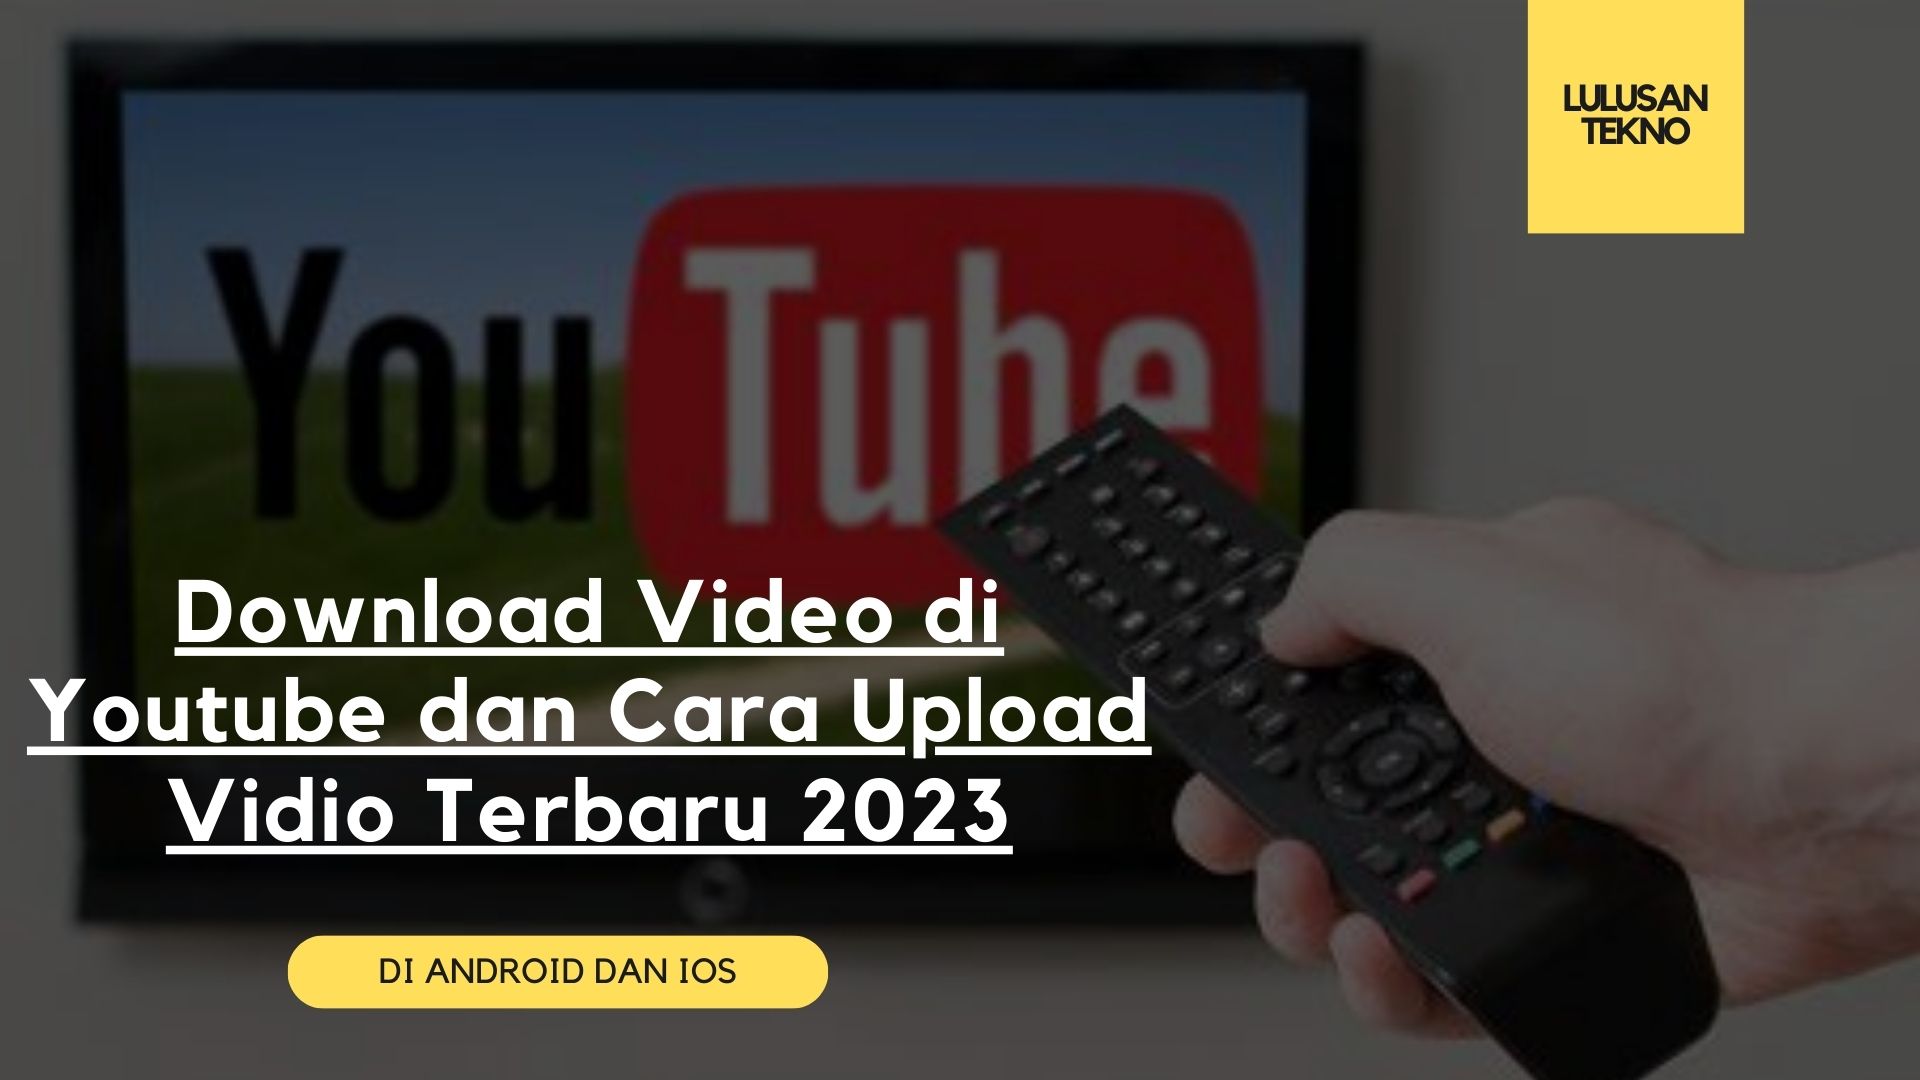 Download Video di Youtube dan Cara Upload Vidio Terbaru 2023